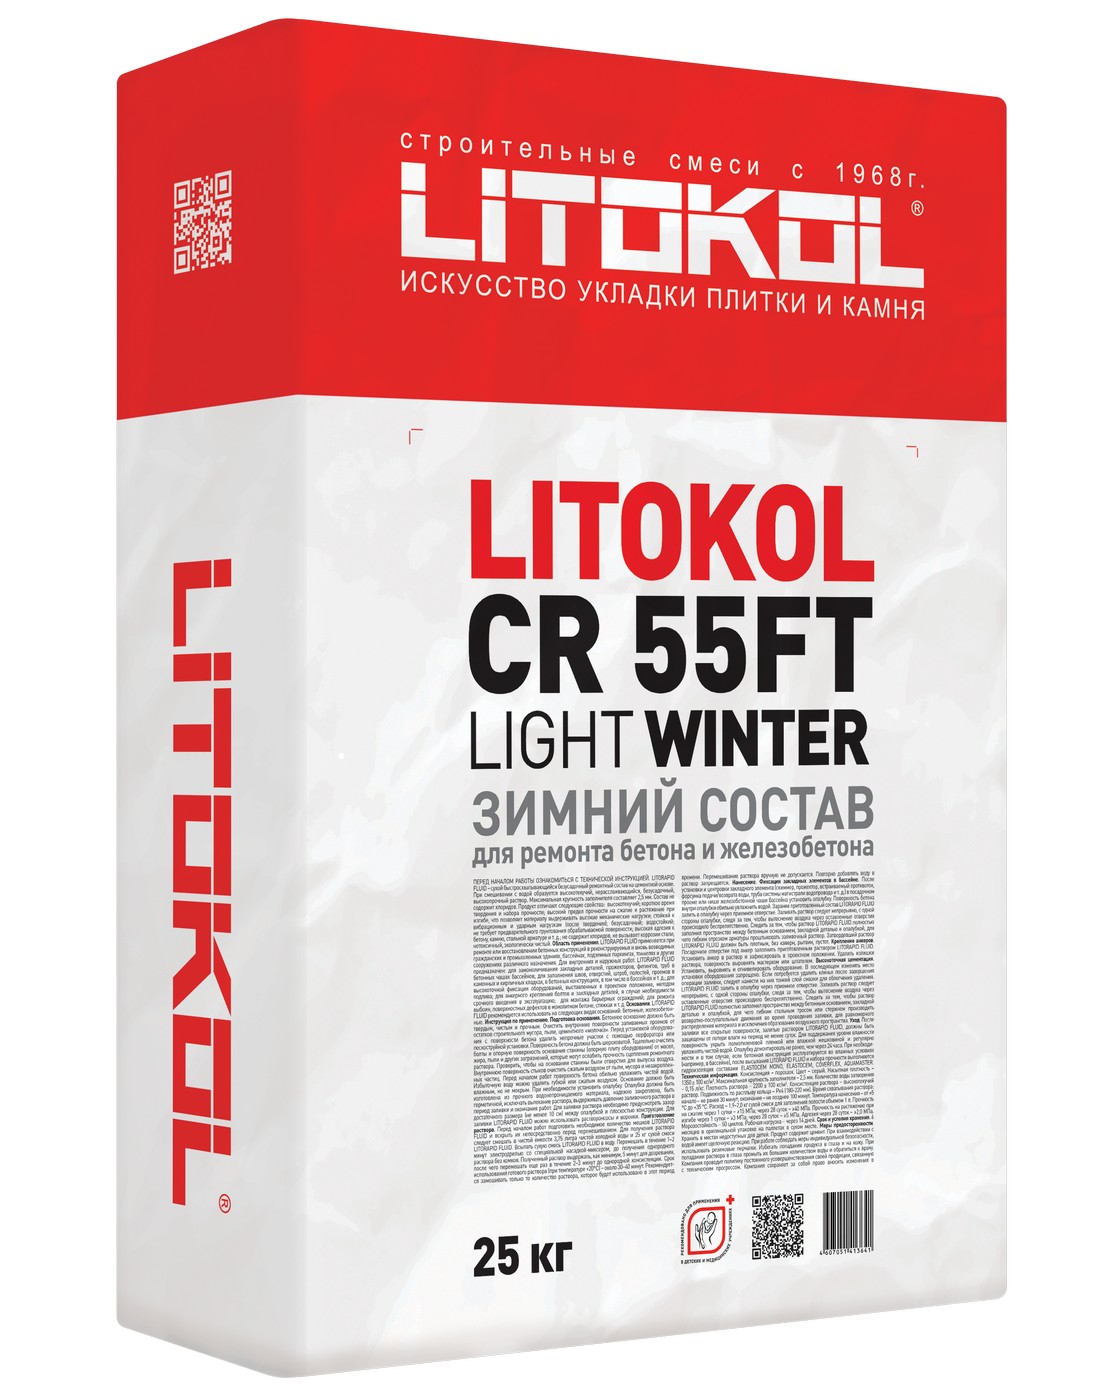 Ремонтный и защитный состав  Litokol CR55FT Light Winter 25кг 499470002 ПОД ЗАКАЗ